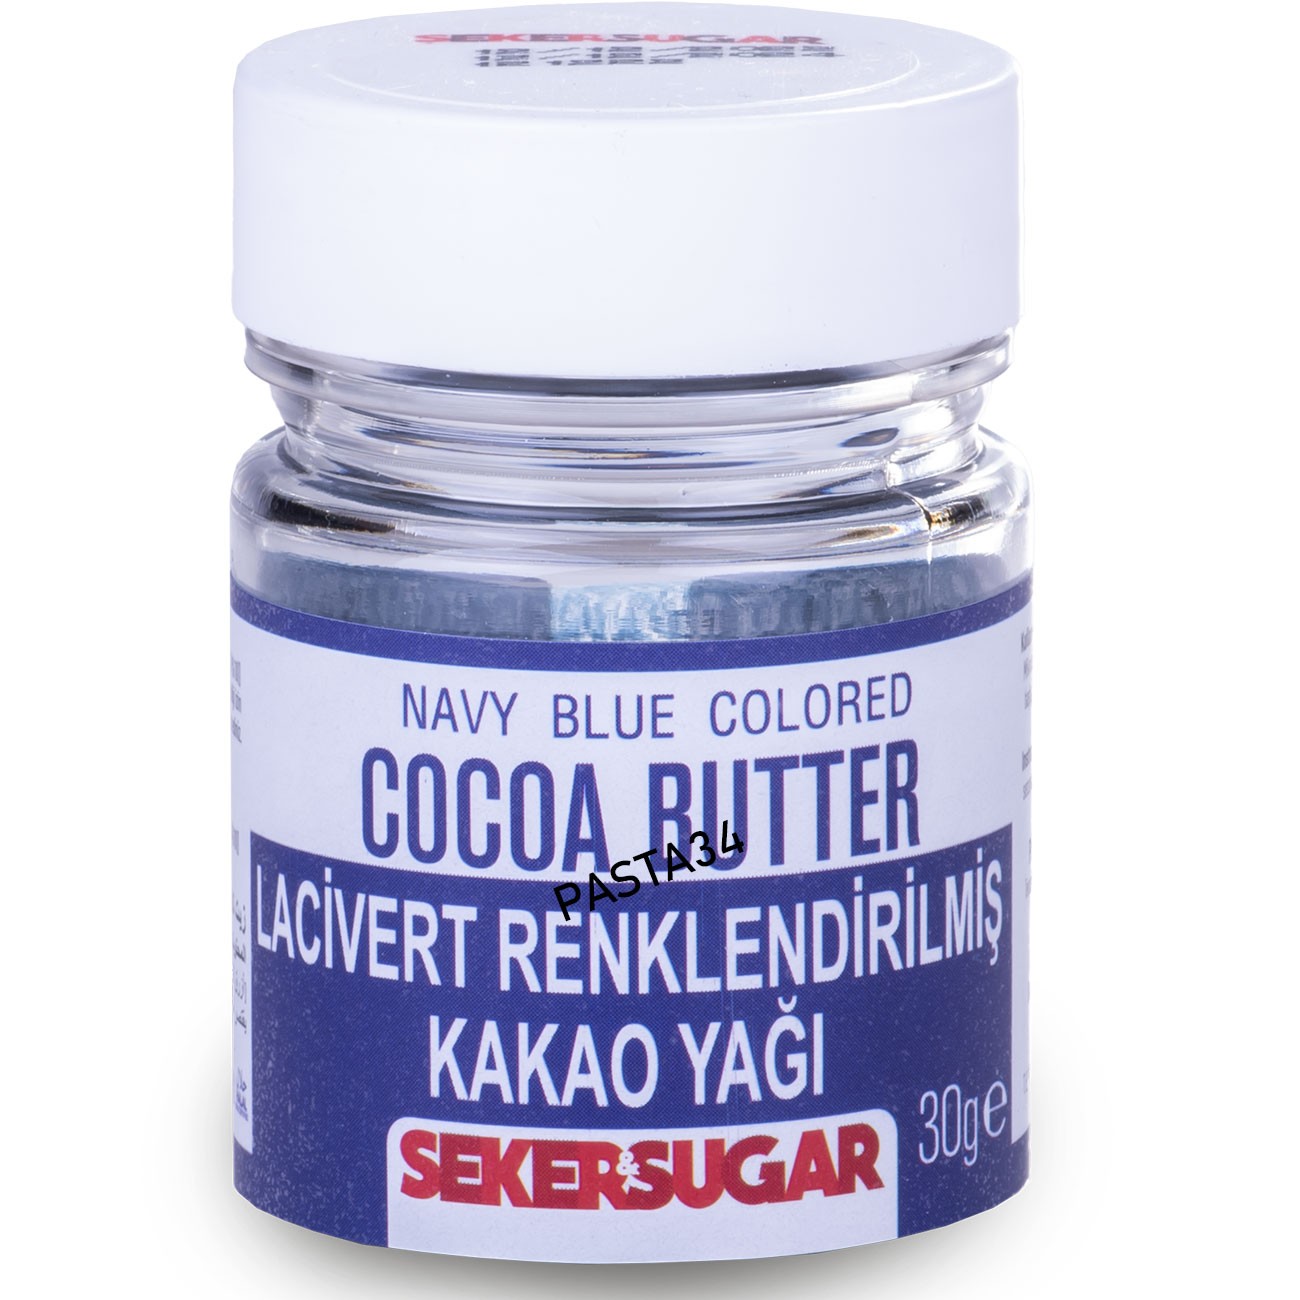 Şeker & Sugar Renklendirilmiş Kakao Yağı 30 Gr - Lacivert